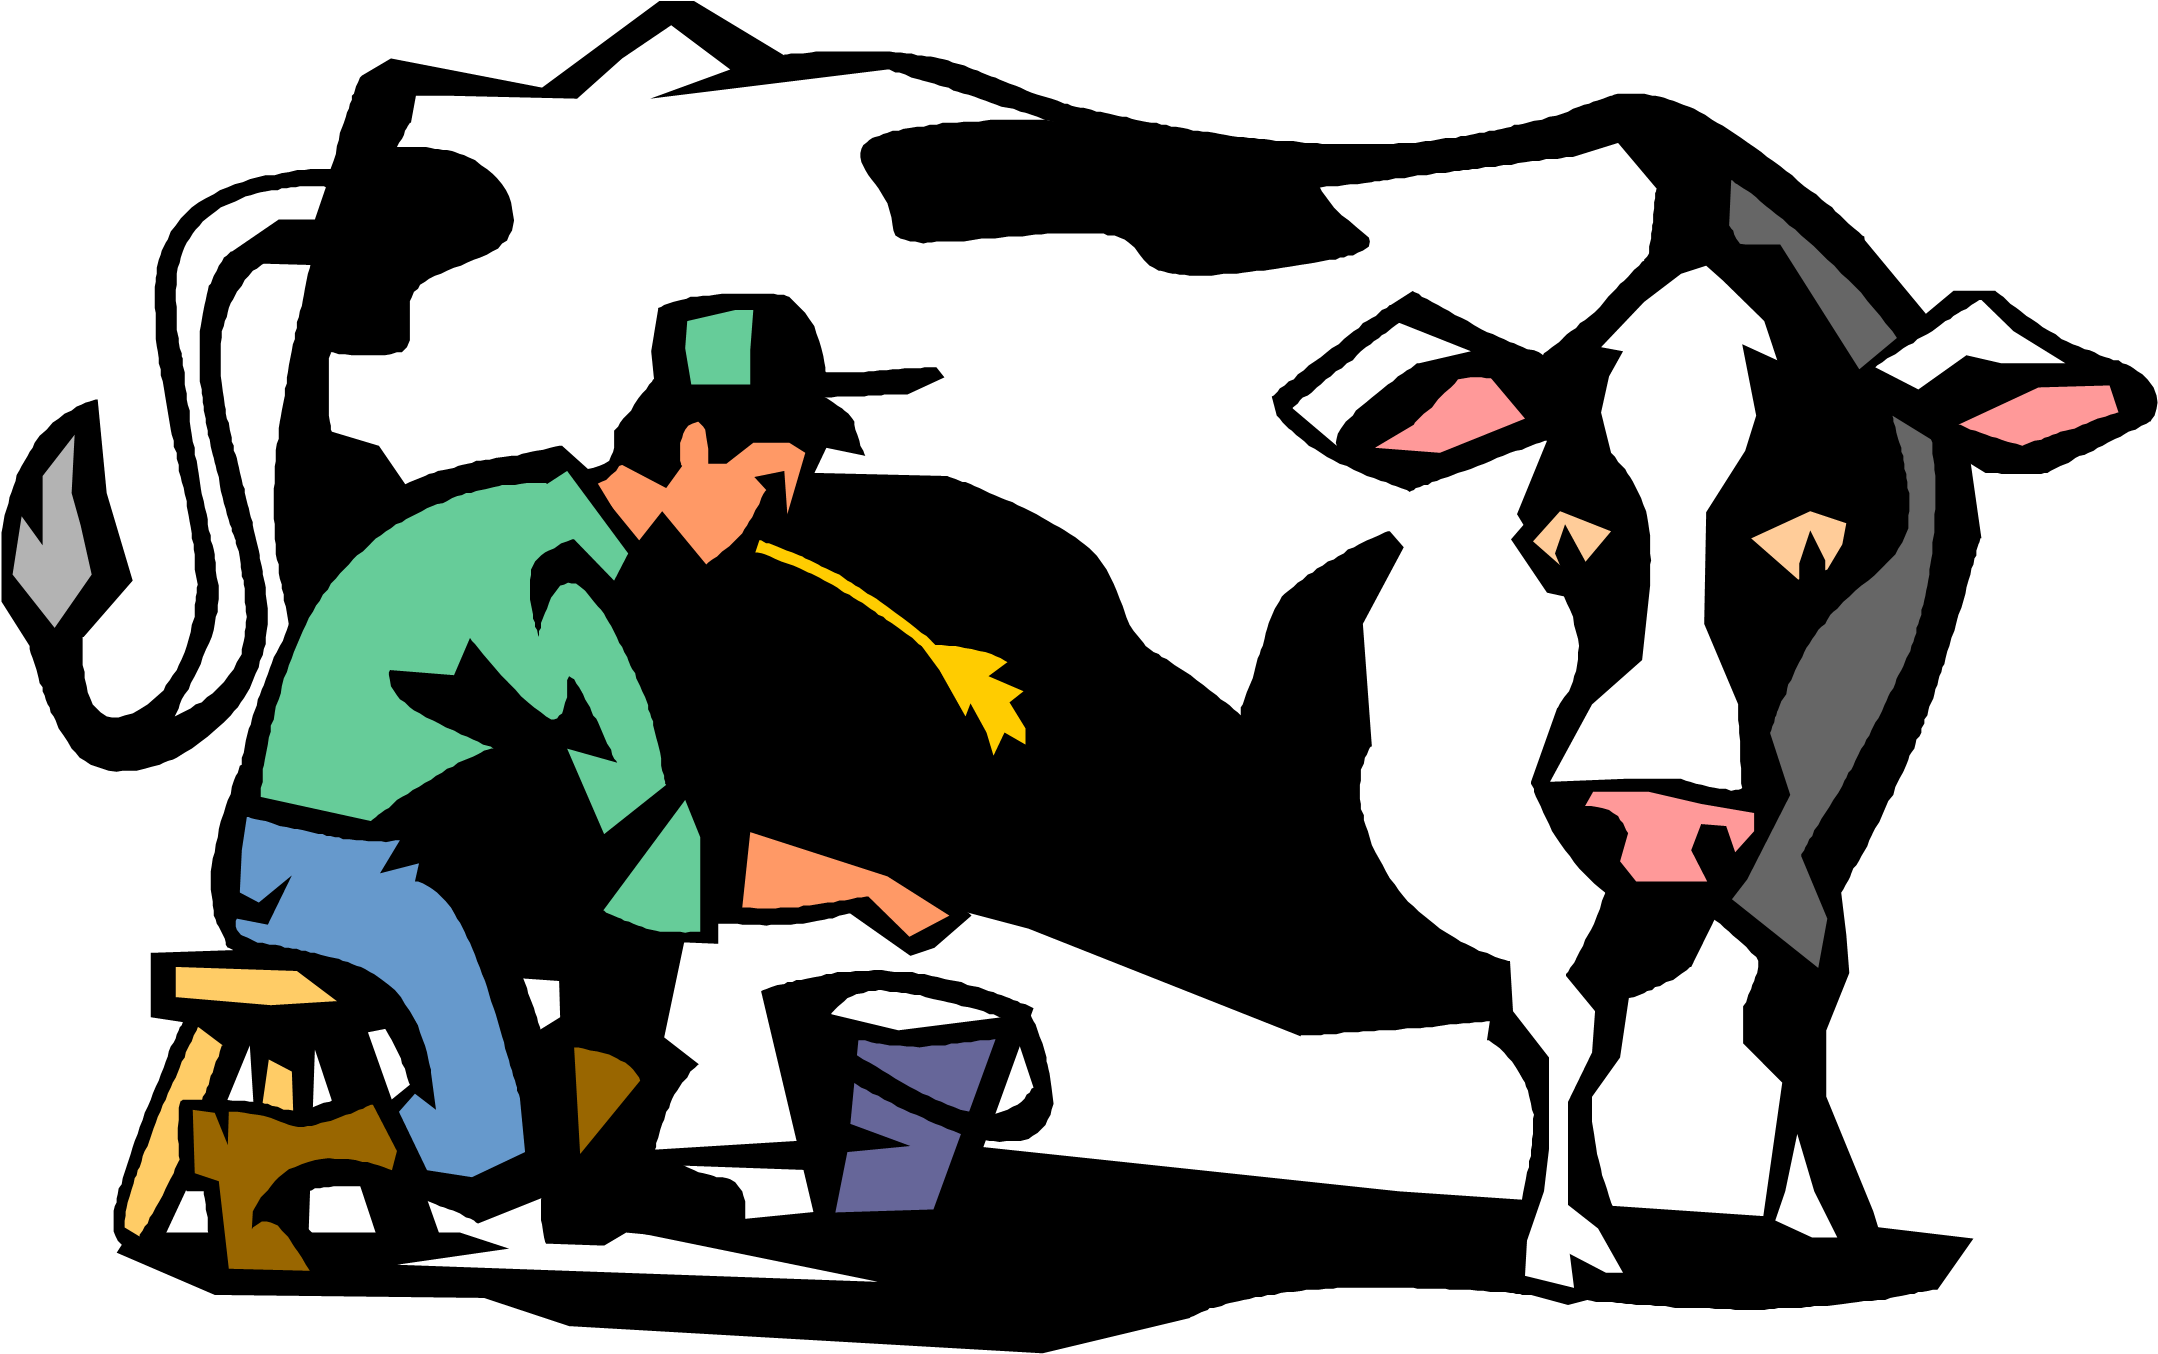 Cow - Milking A Cow Cartoon (2169x1381)